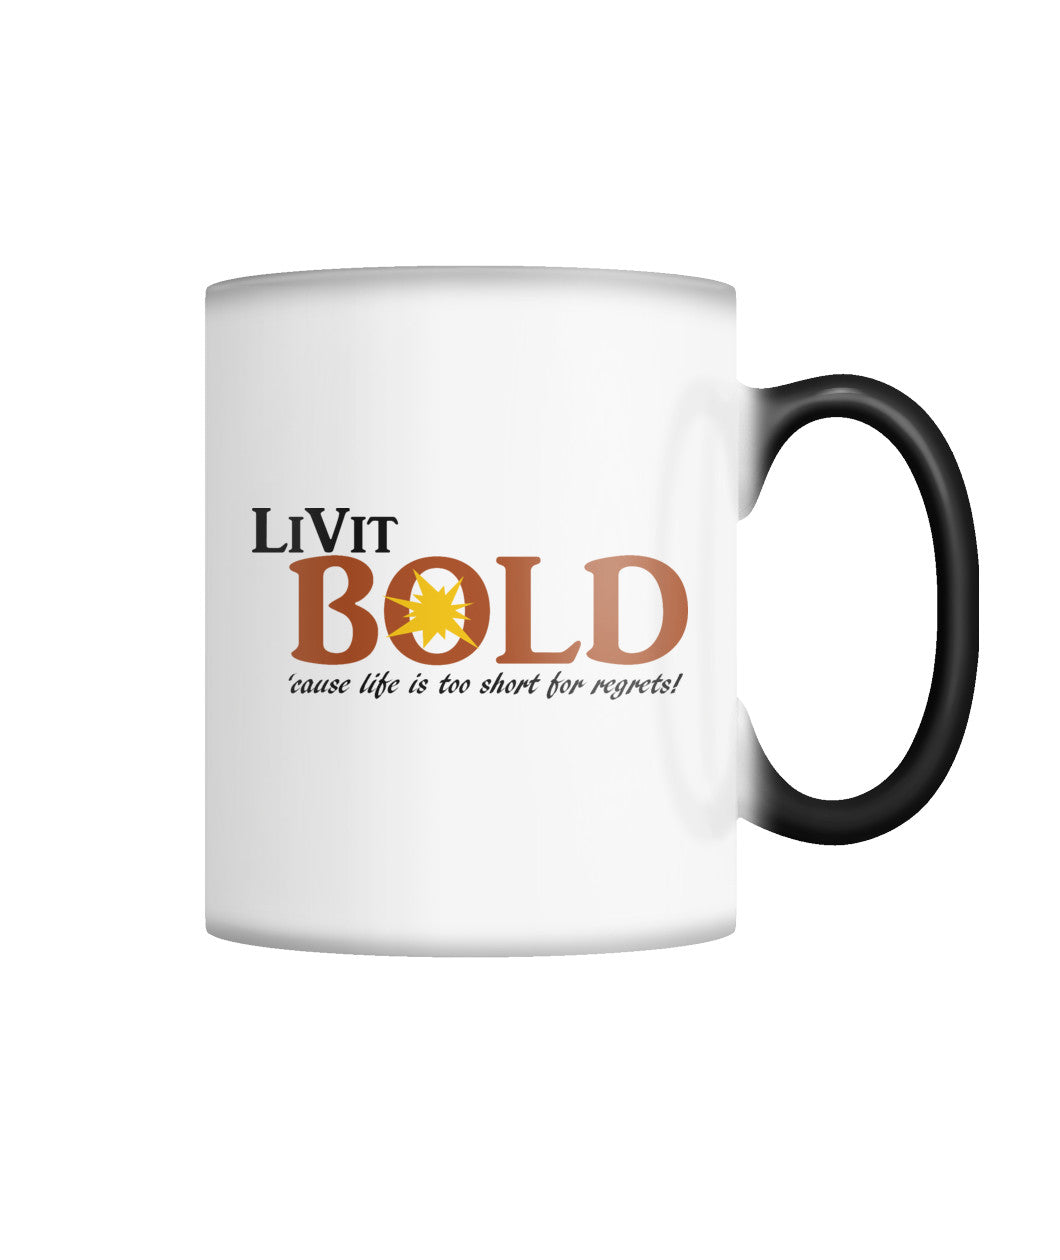 LiVit BOLD Color Changing Mug Color Changing Mug - LiVit BOLD